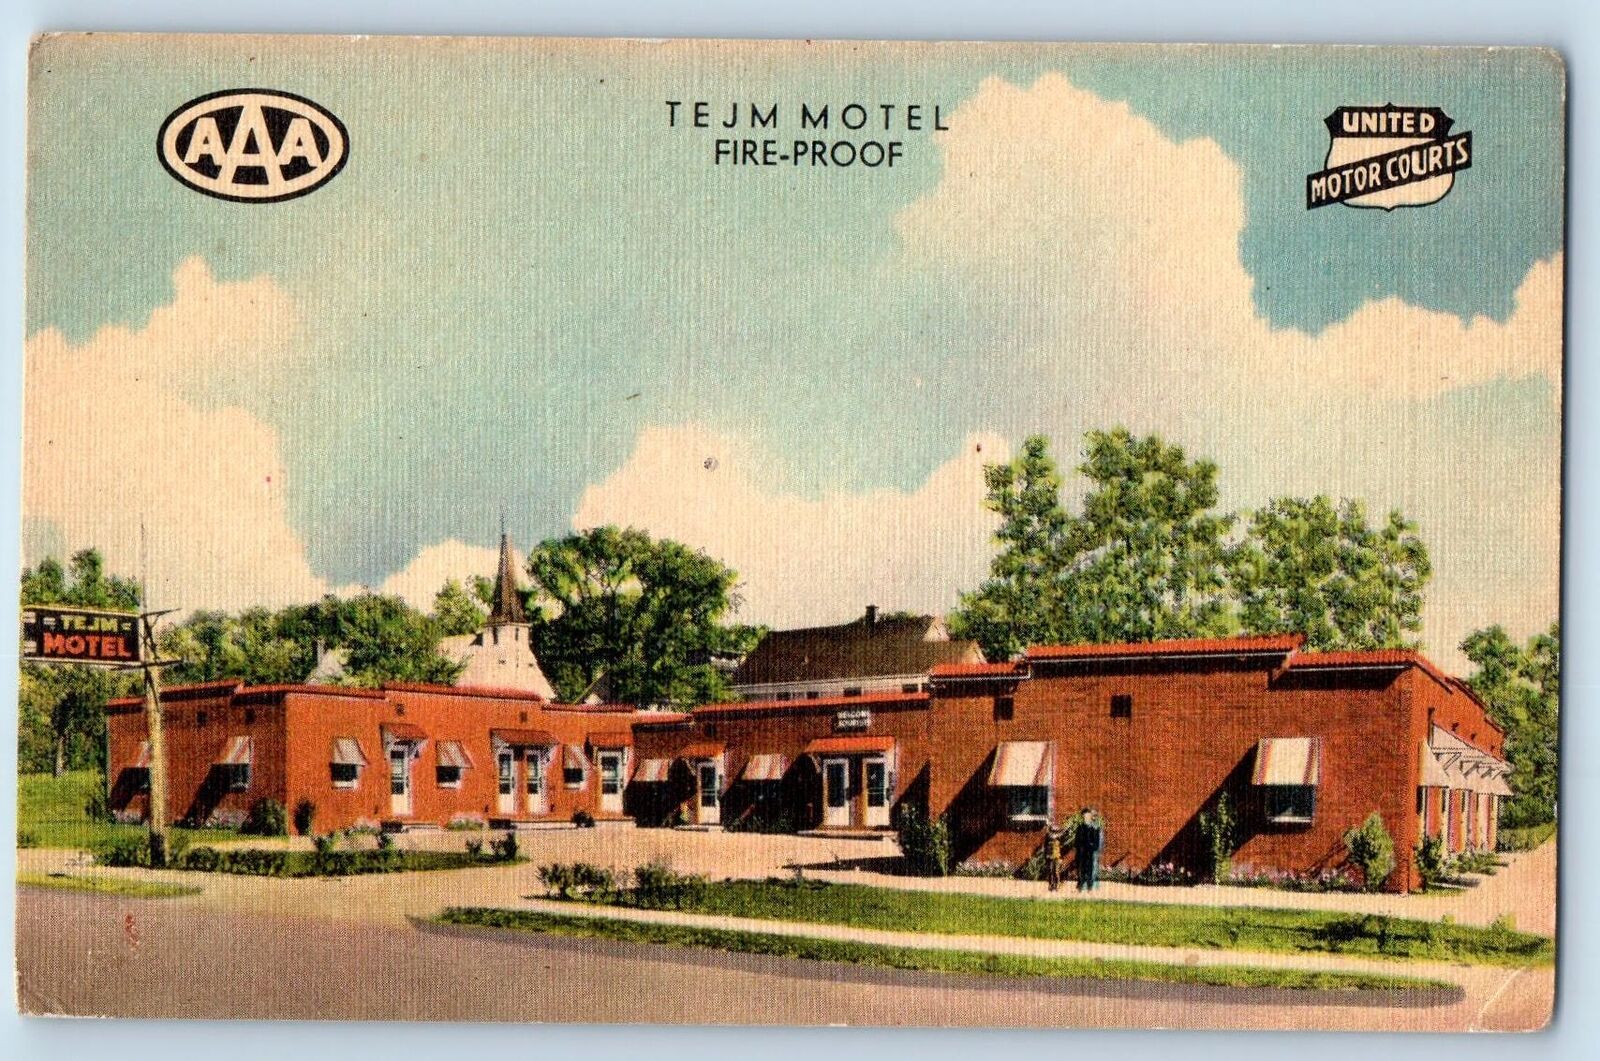 Bettendorf Iowa IA Postcard Tejm Motel Exterior Roadside Signage c1940s Vintage